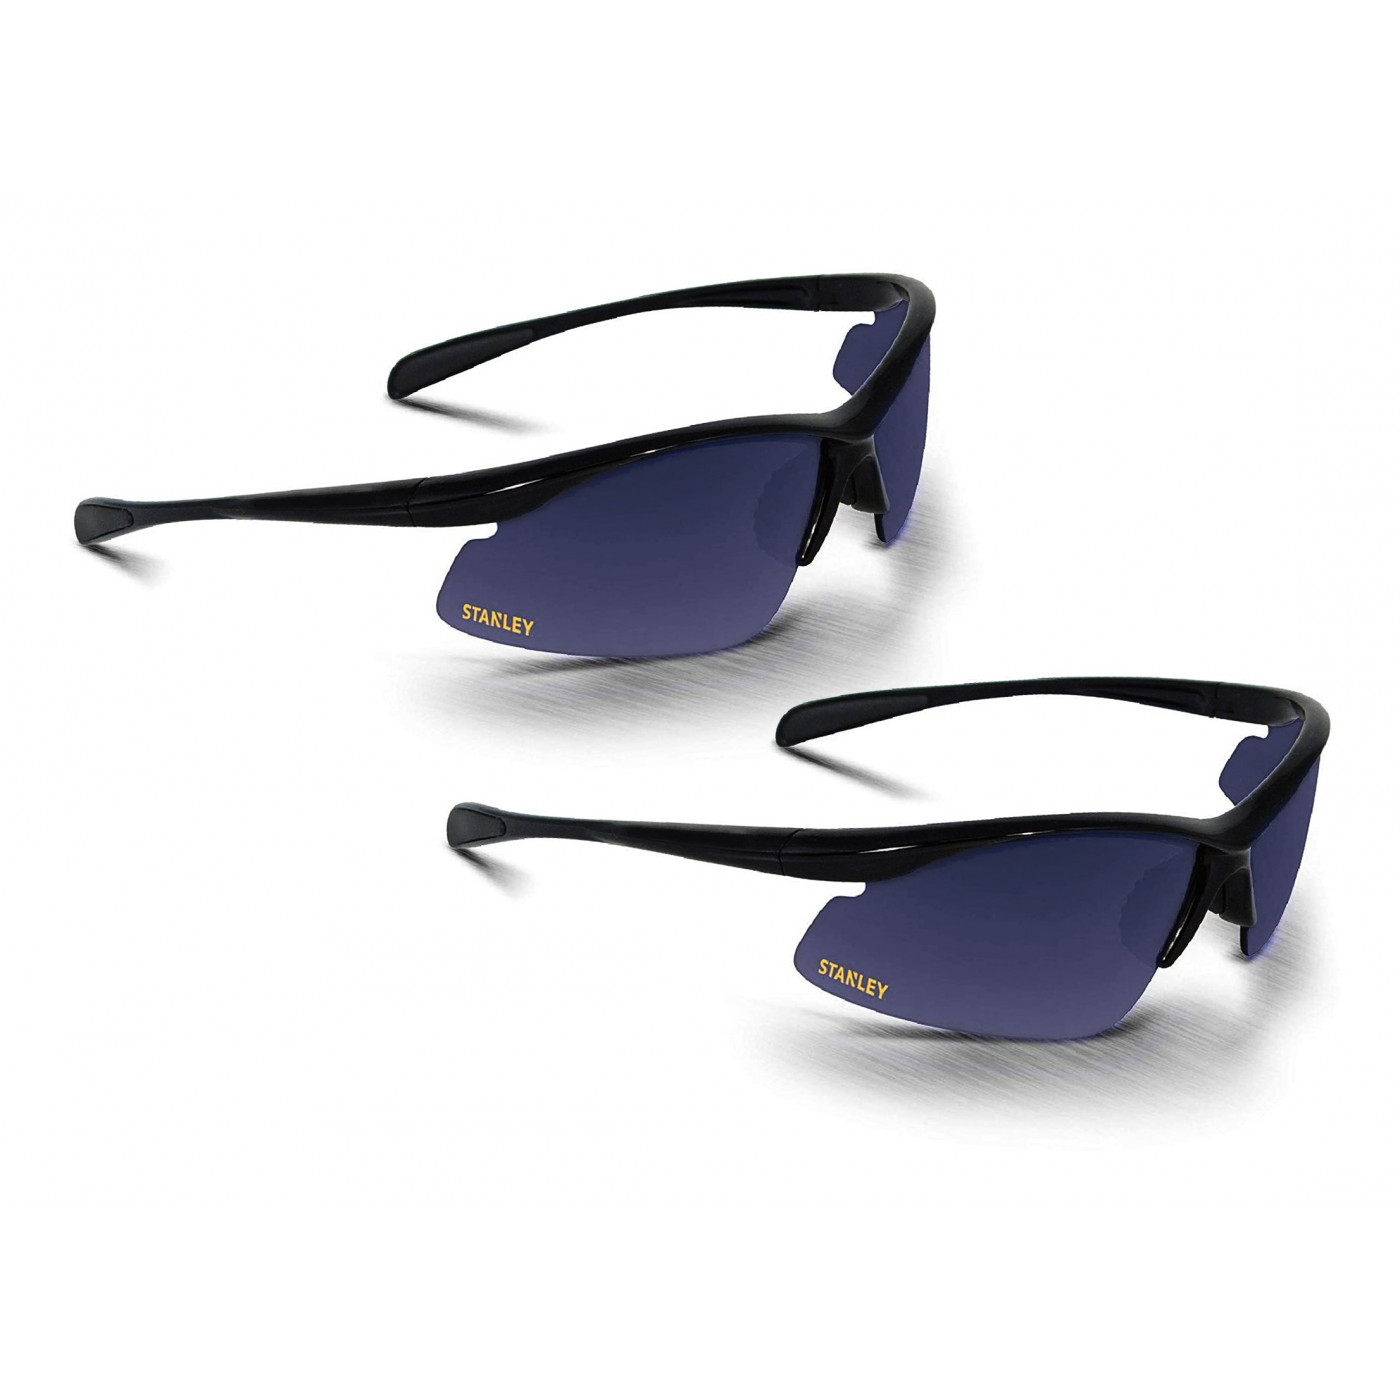 Set van 2 hippe veiligheidsbrillen voor bescherming tijdens